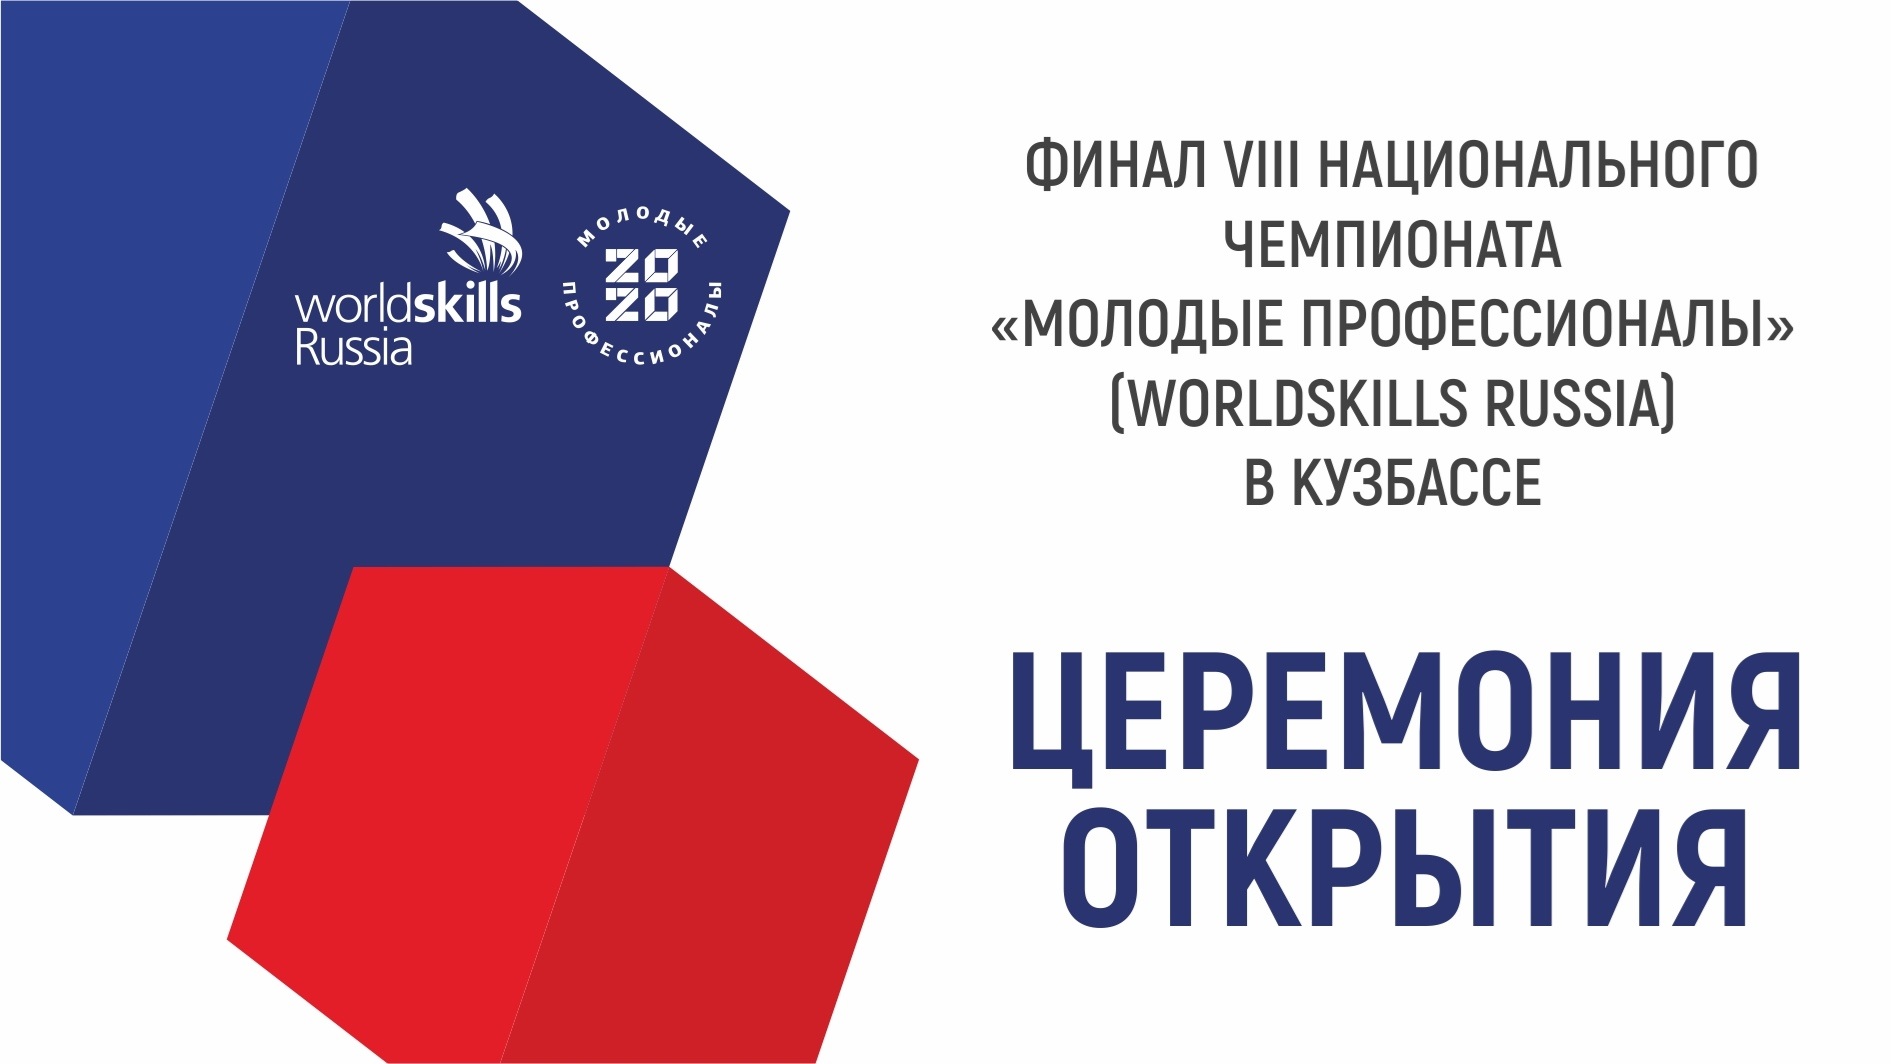 Церемония открытия финала VIII Национального чемпионата «Молодые профессионалы» (WorldSkills Russia)